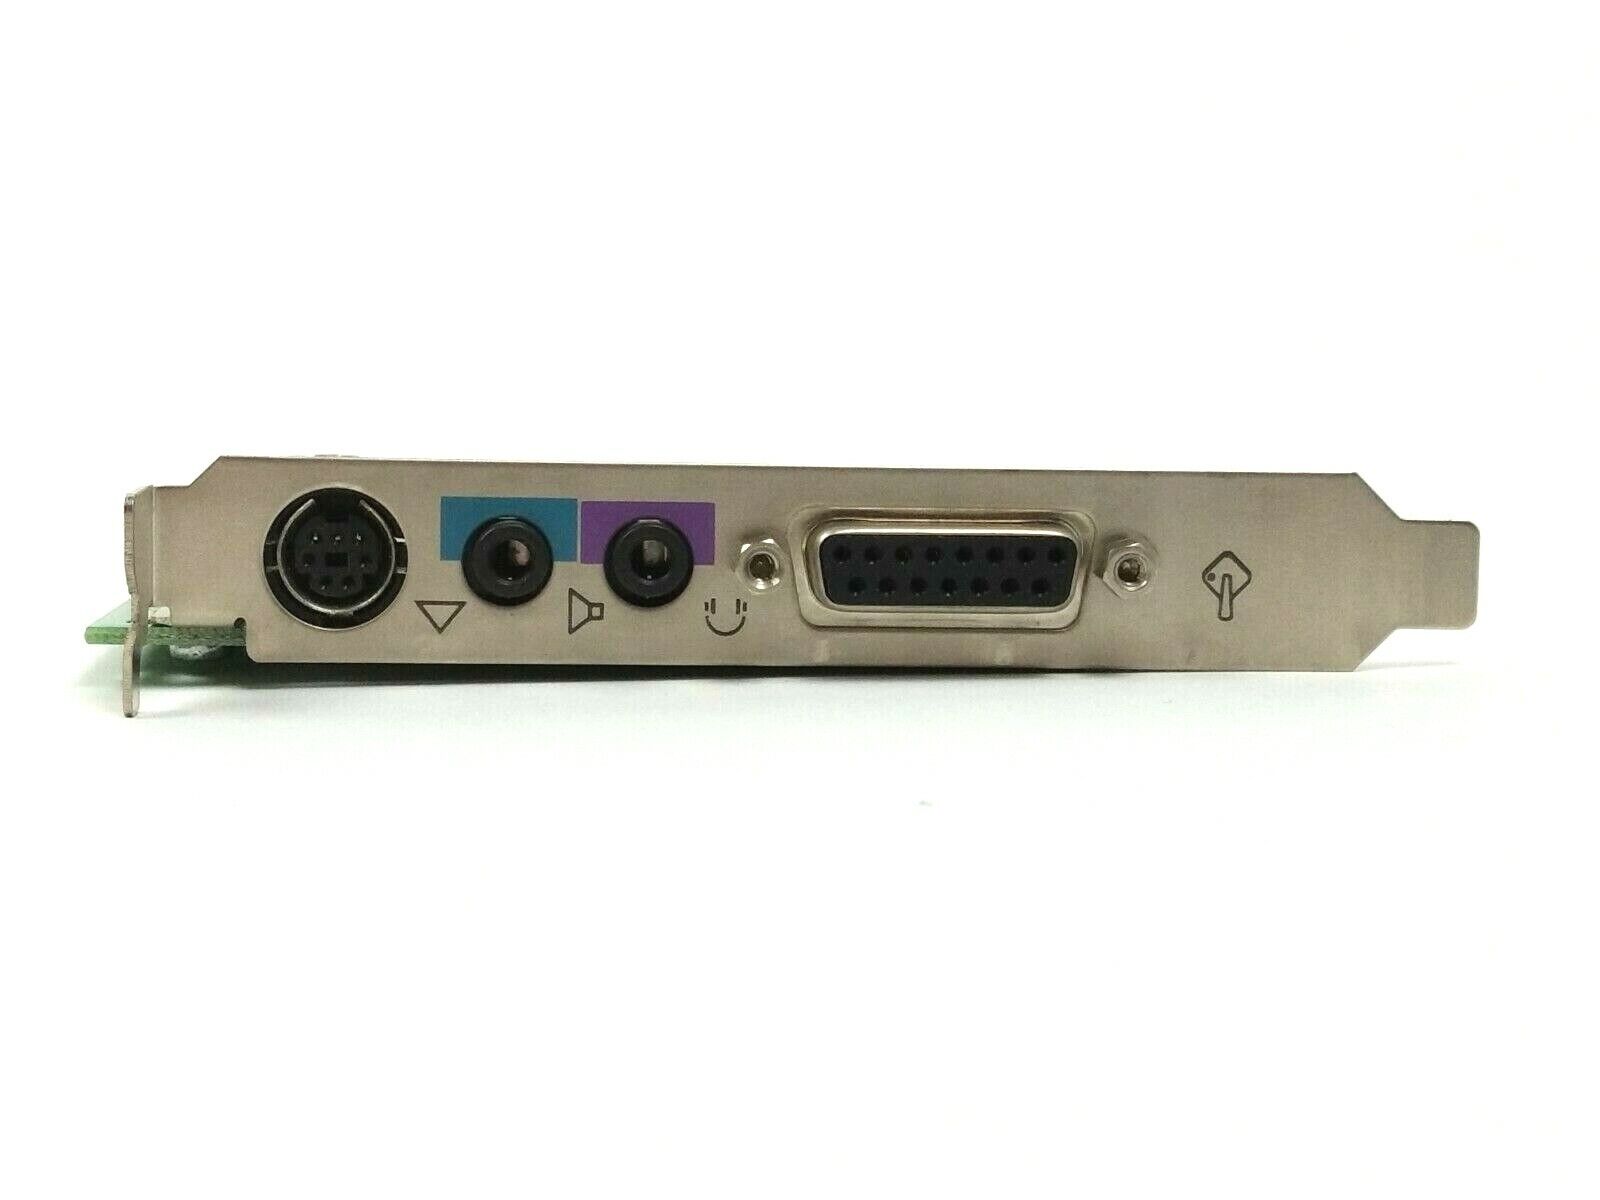 HP Ensoniq 5184-4773  Combo Sound / Gameport PCI Card 4001044101 REV A